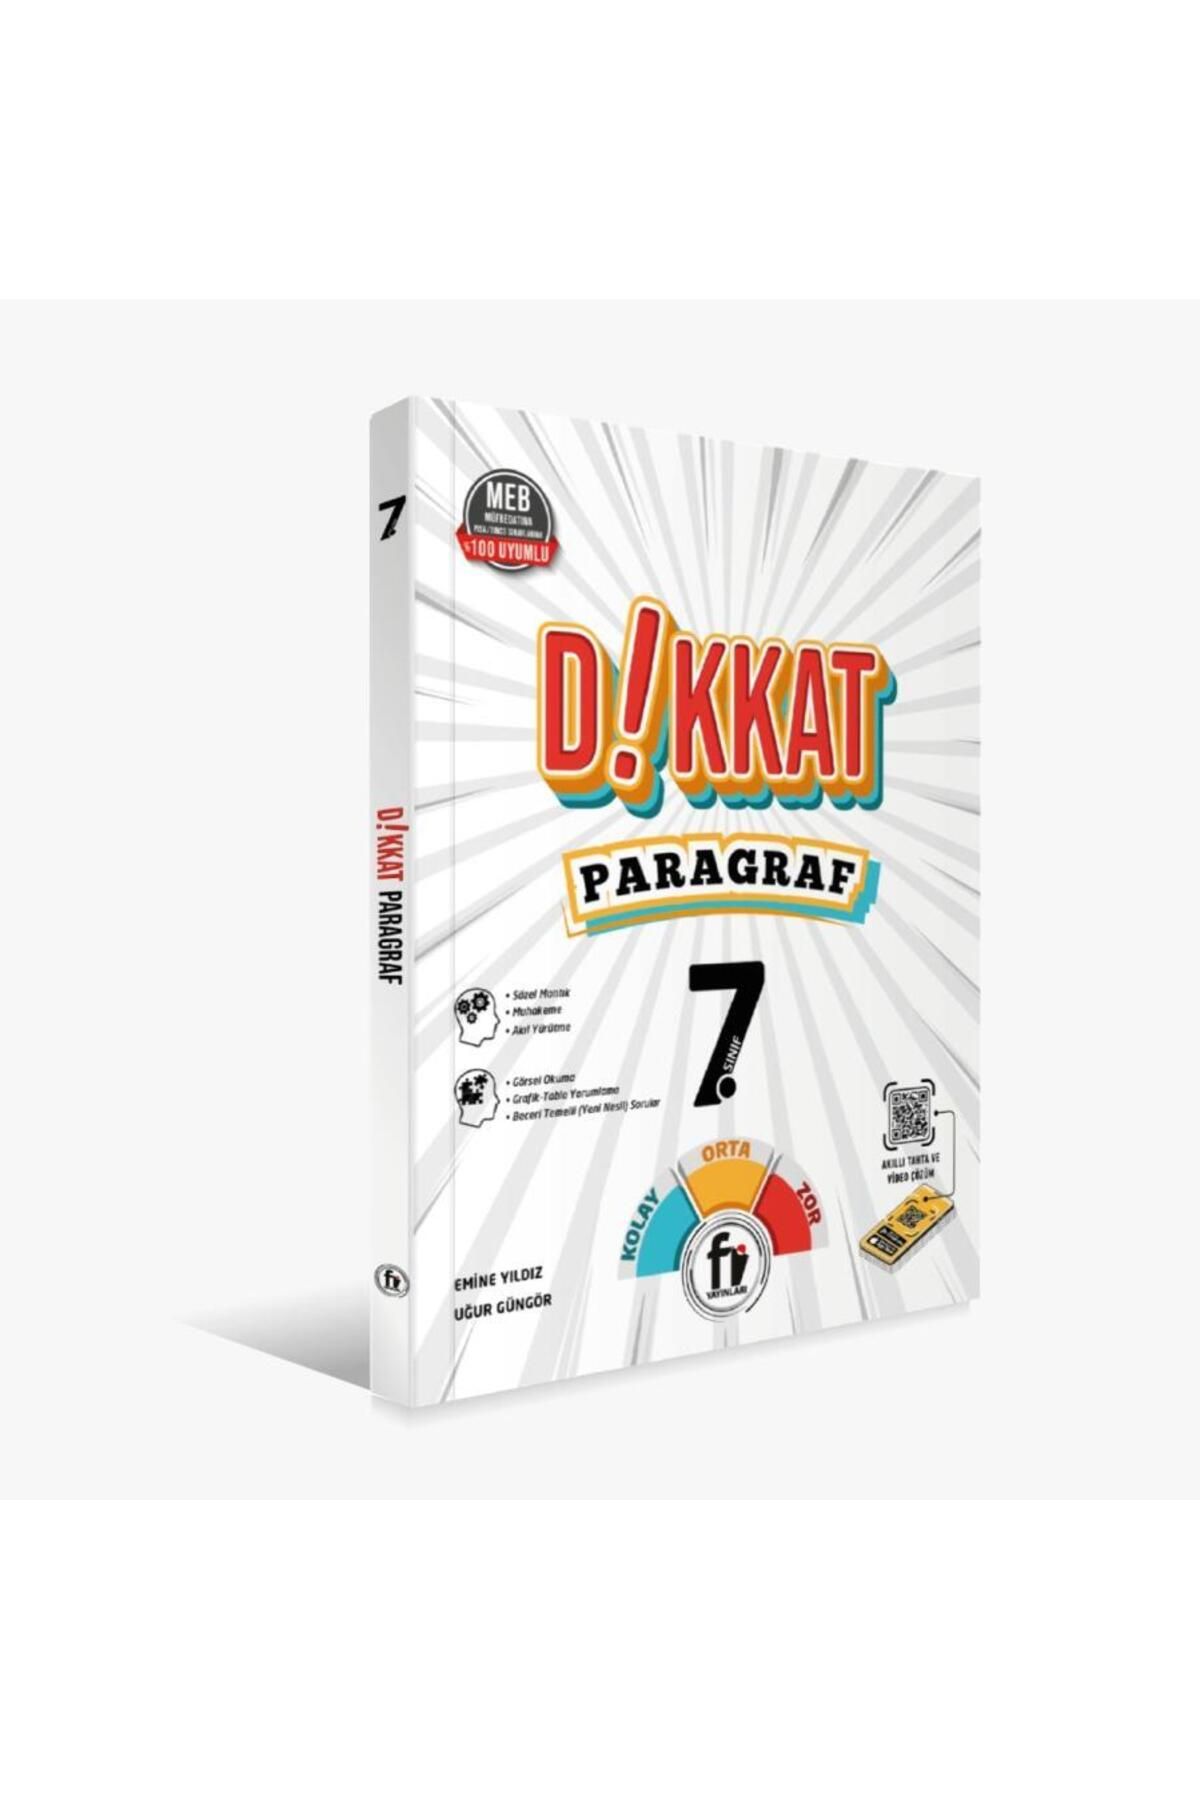 Fi Yayınları 7.SINIF DİKKAT PARAGRAF SORU BANKASI / Fİ YAYINLARI